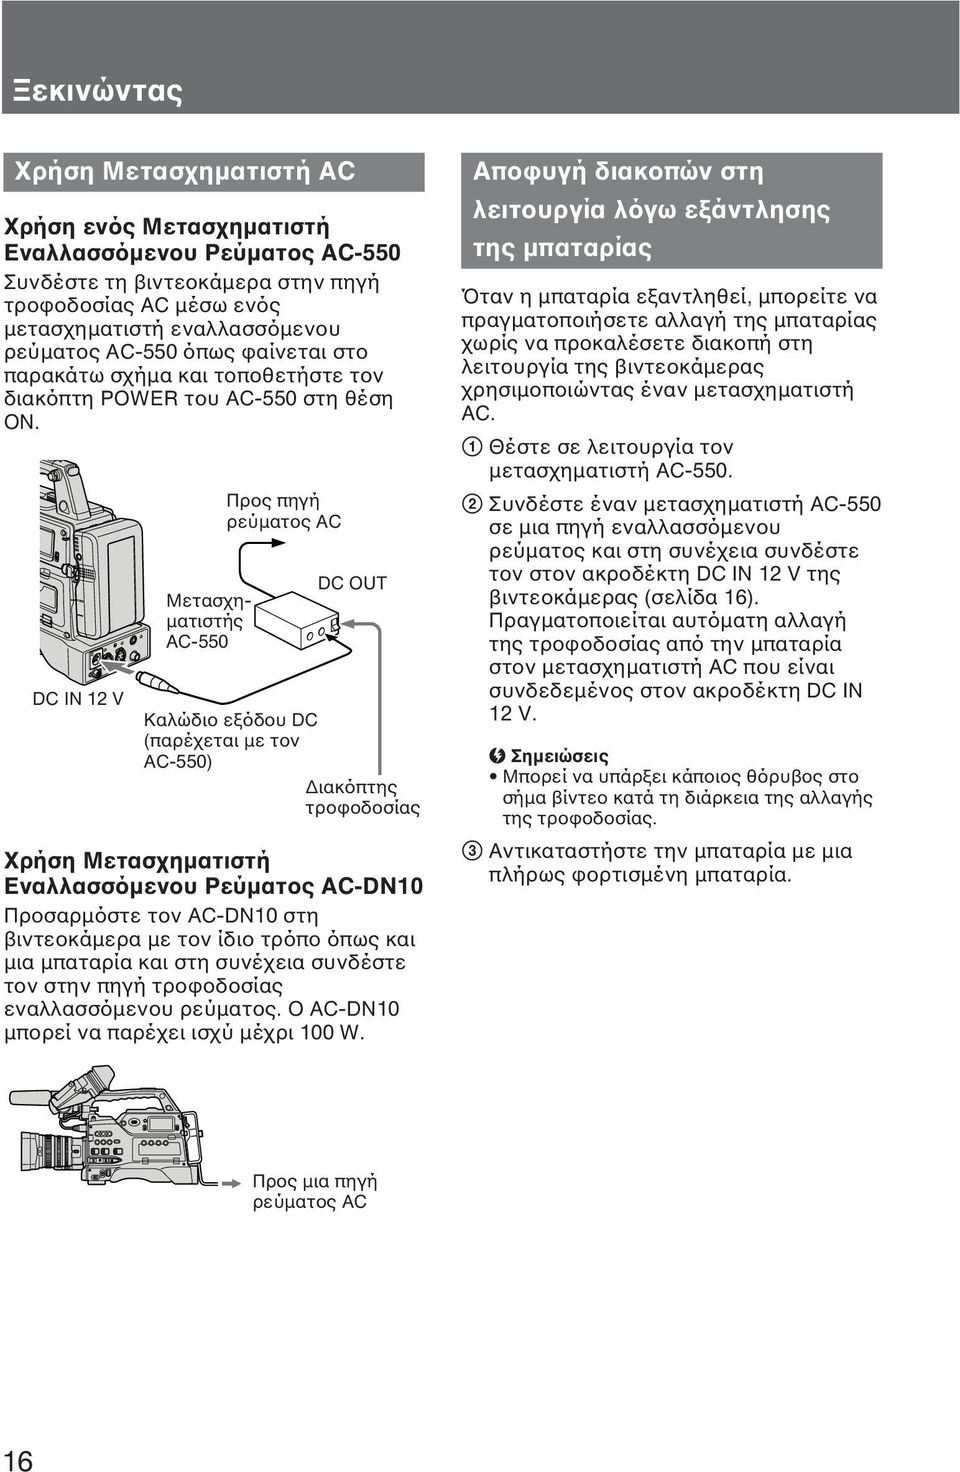 DC IN 12 V Μετασχηματιστής AC-550 Προς πηγή ρεύματος AC DC OUT Καλώδιο εξόδου DC (παρέχεται με τον AC-550) Διακόπτης τροφοδοσίας Χρήση Μετασχηματιστή Εναλλασσόμενου Ρεύματος AC-DN10 Προσαρμόστε τον